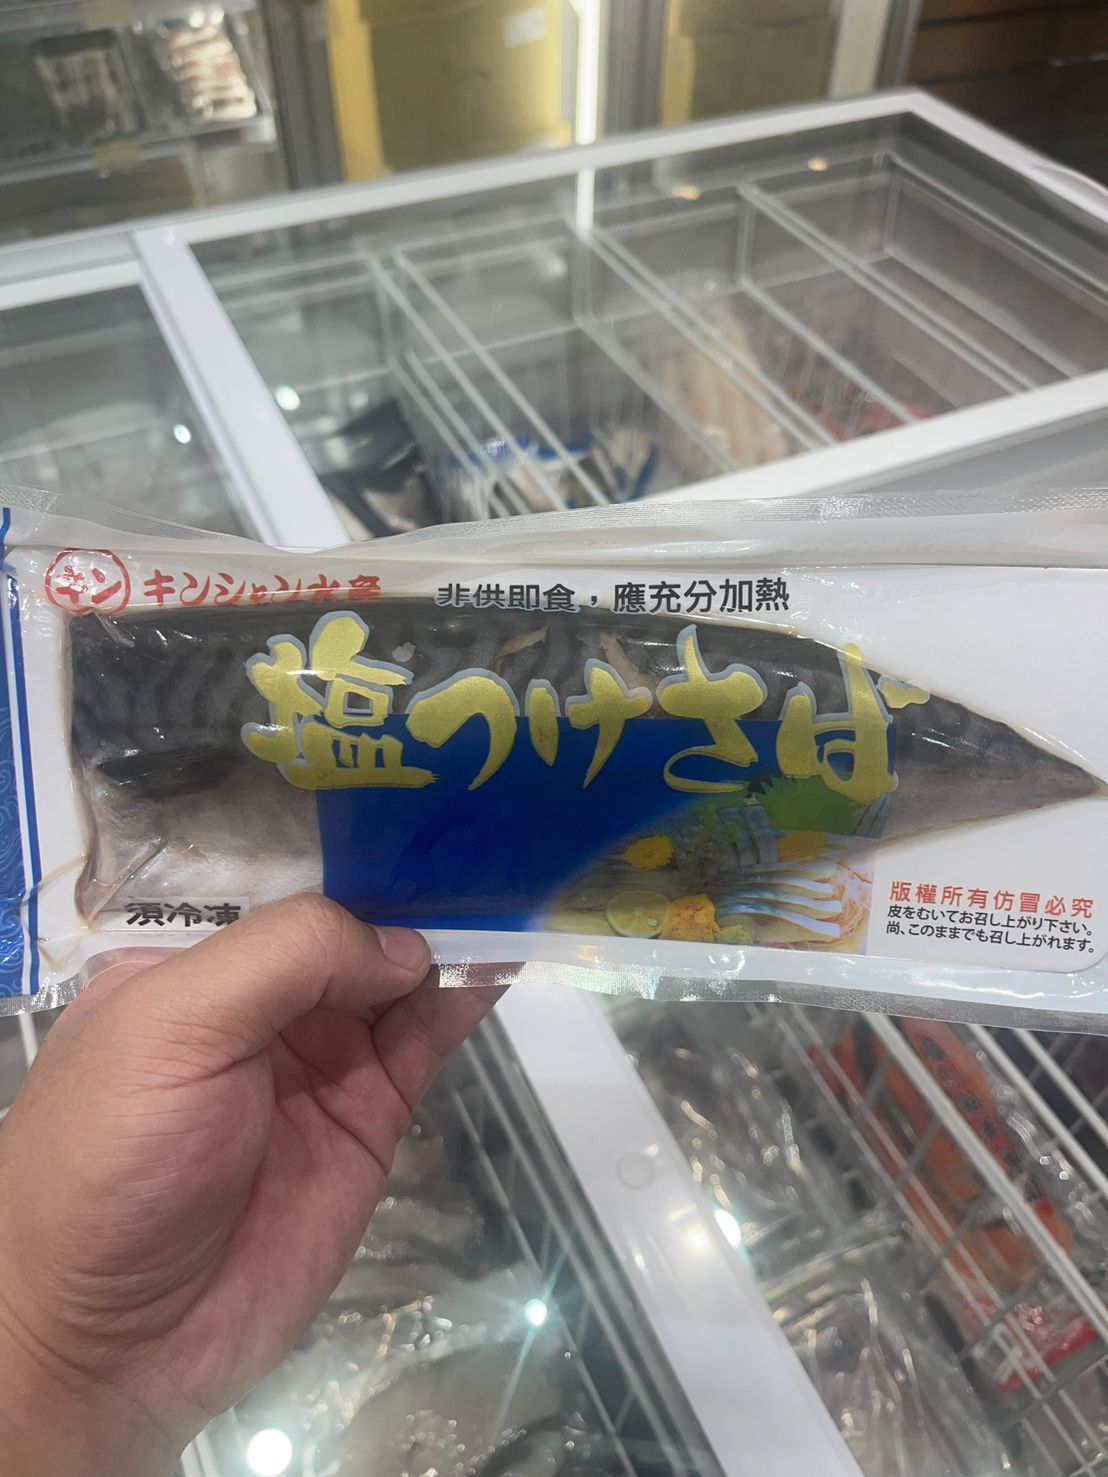 薄鹽鯖魚100克+-10% 5片